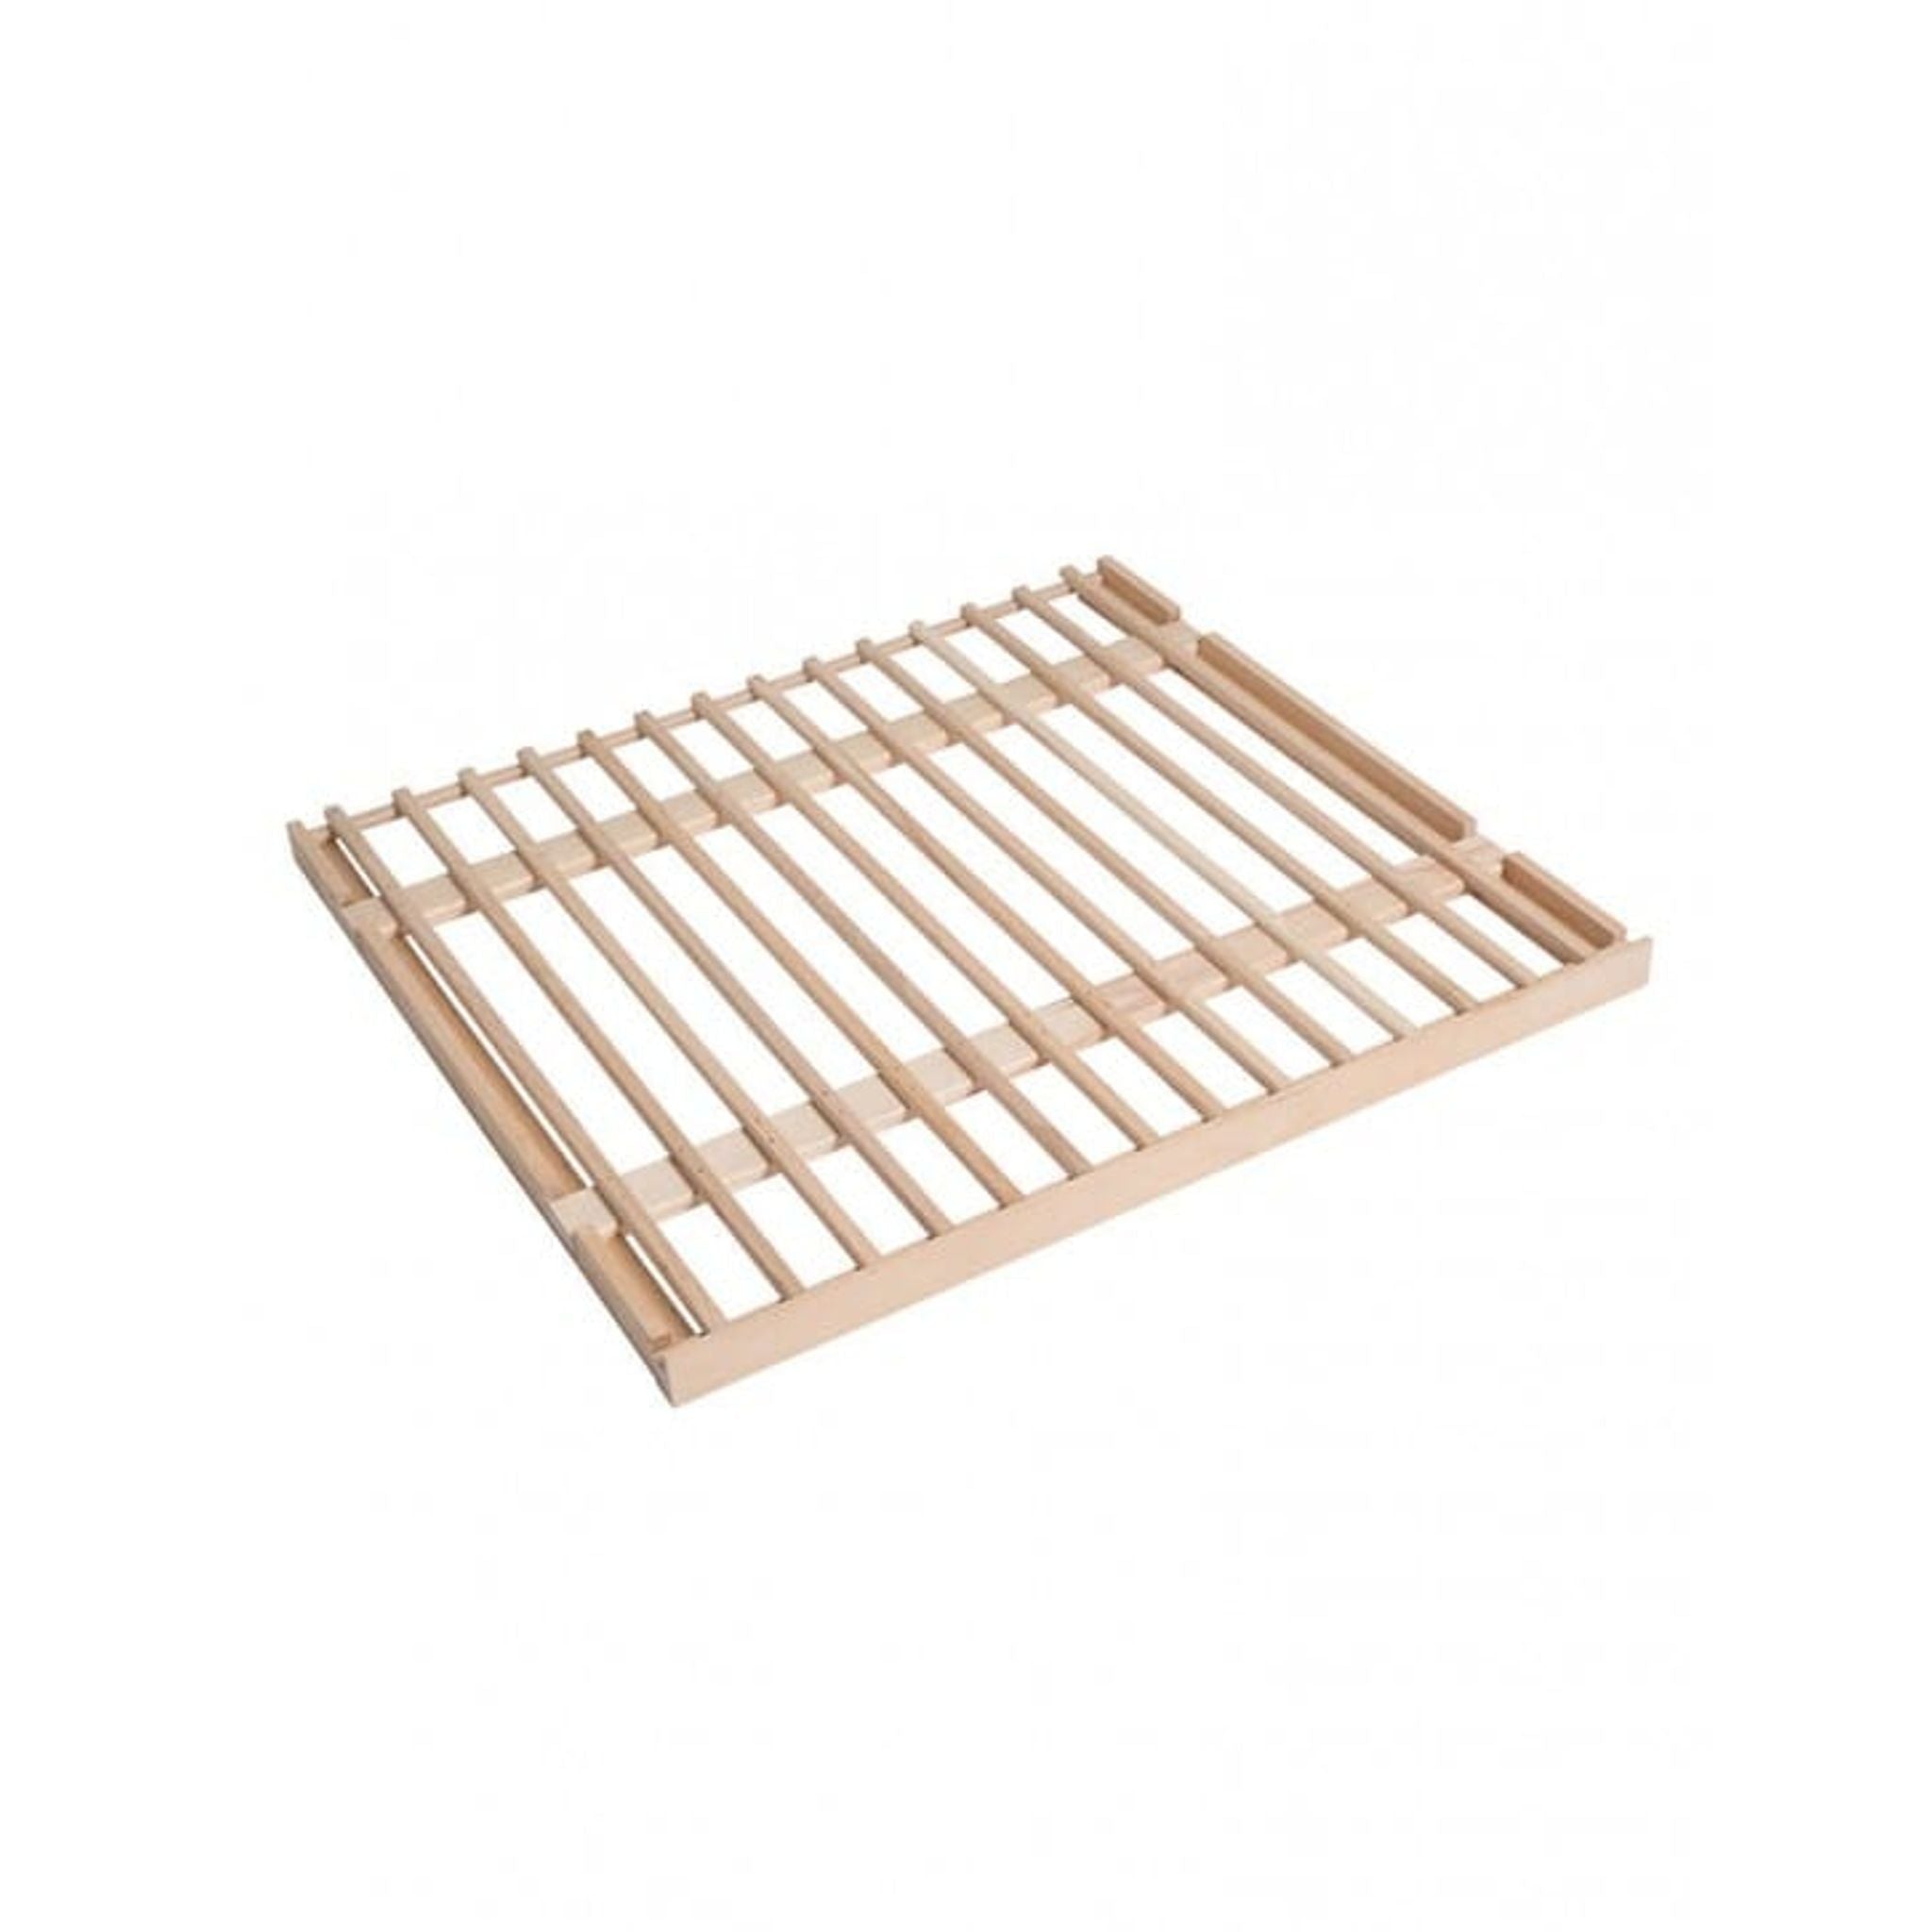 CLAVIP07 Fixed Wooden Shelf - La Sommeliere